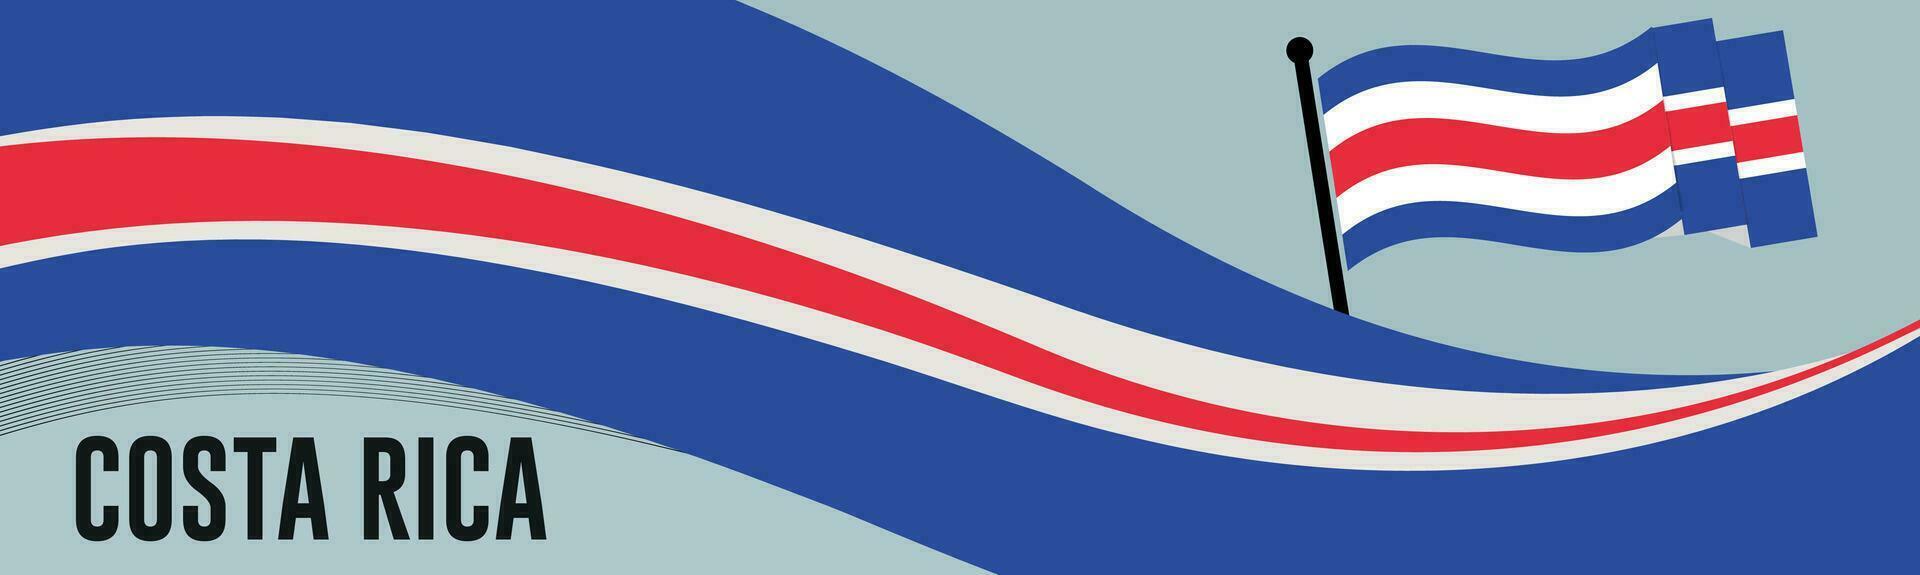 costa rica contento nacional día celebracion bandera vector ilustración